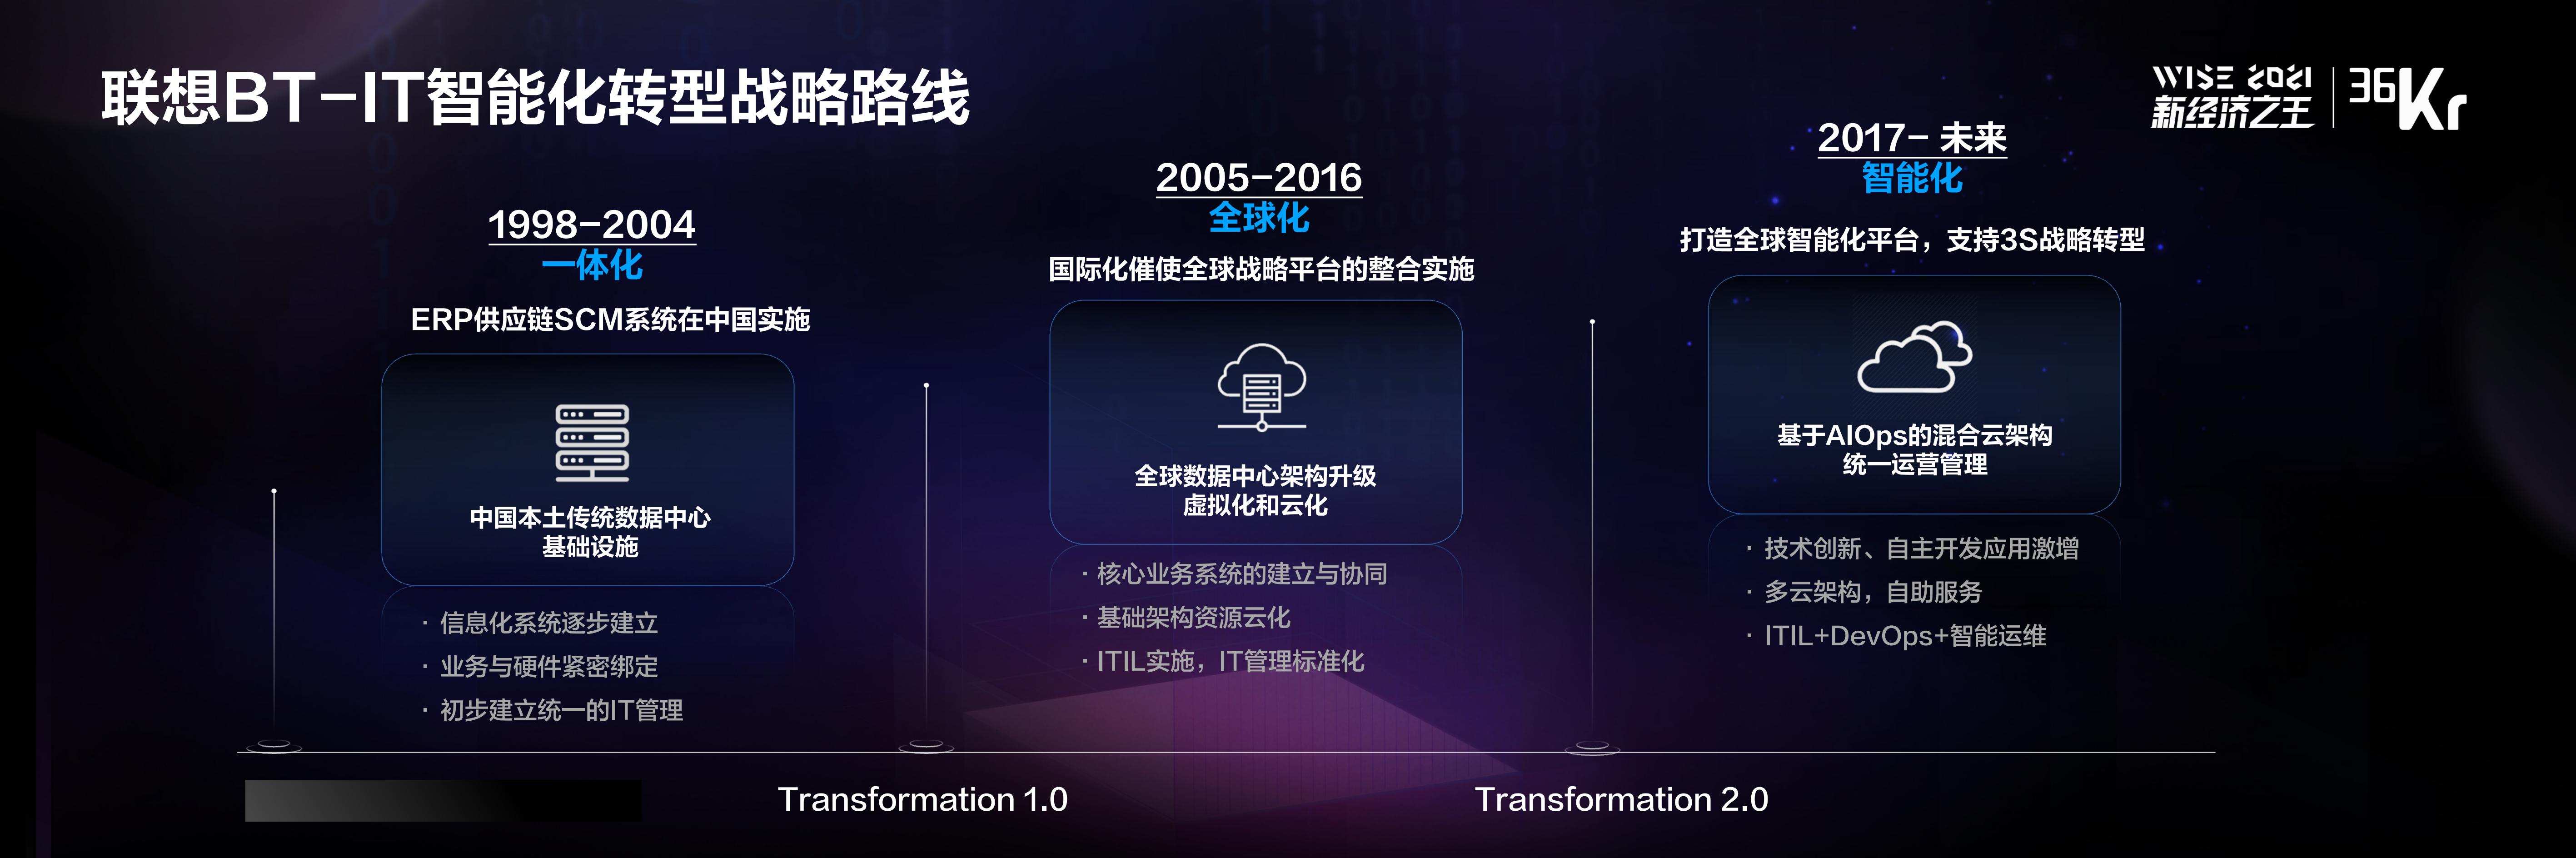 联想集团副总裁&联想中国首席数字转型官李时：新 IT，用科技赋能企业数字化 | WISE 2021中国数字化创新高峰论坛